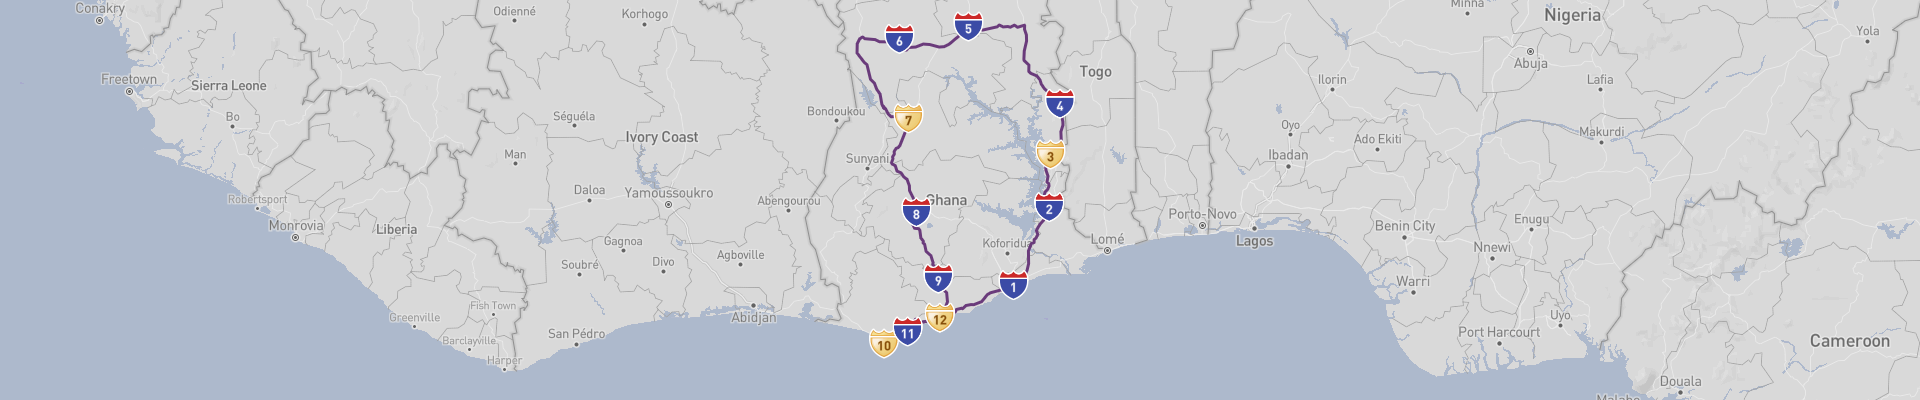 Itinéraire Ghana 